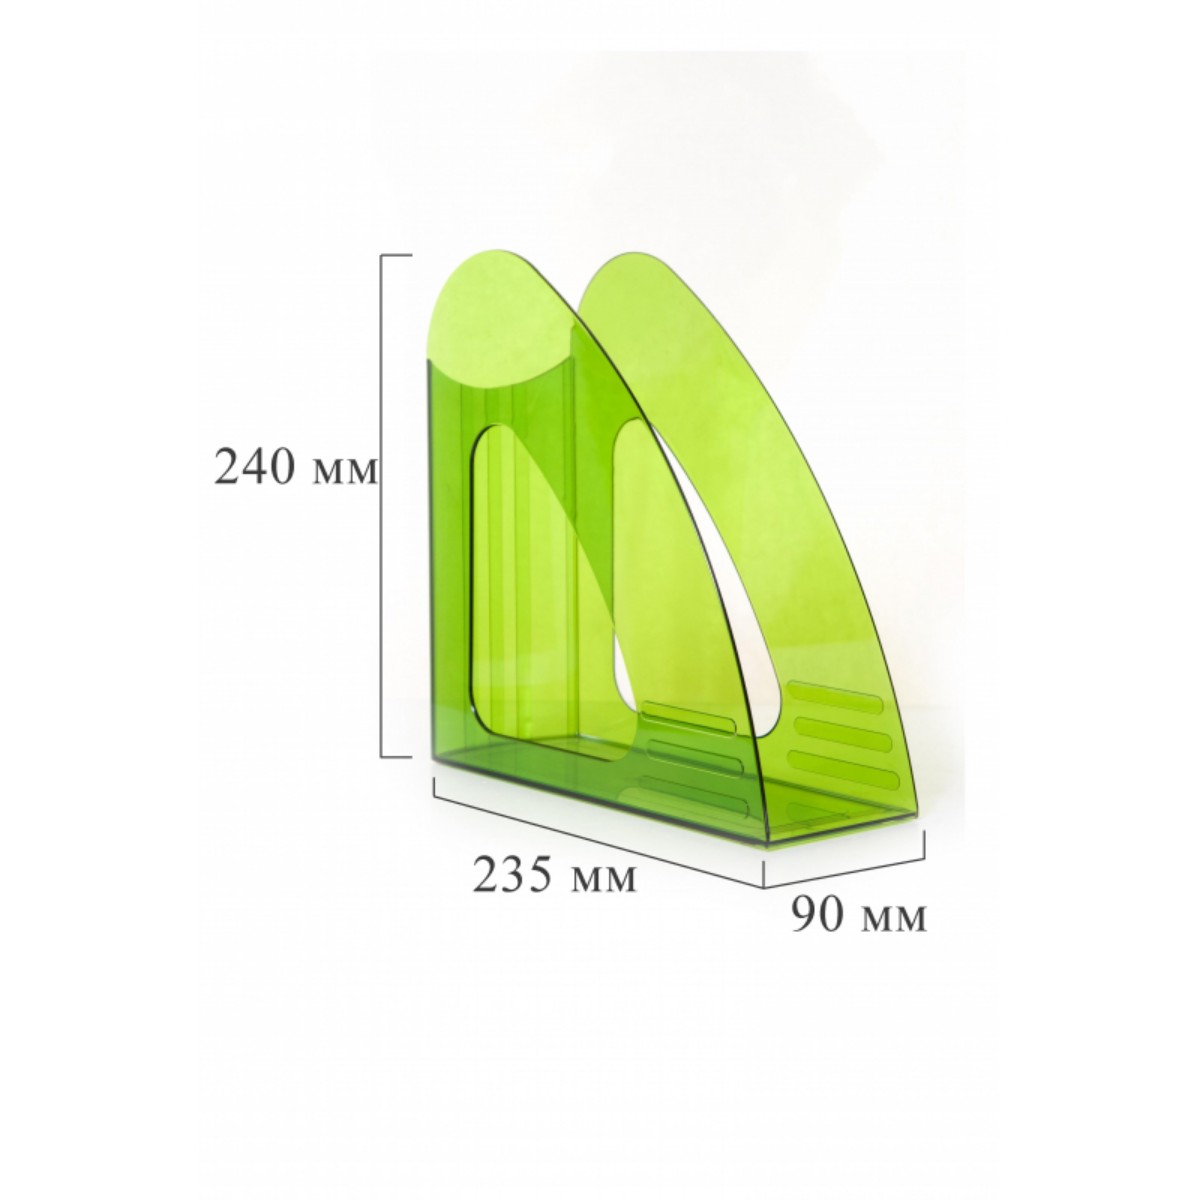 Вертикальный накопитель Attache 90мм прозрачный зеленый 2 штуки - фото 4